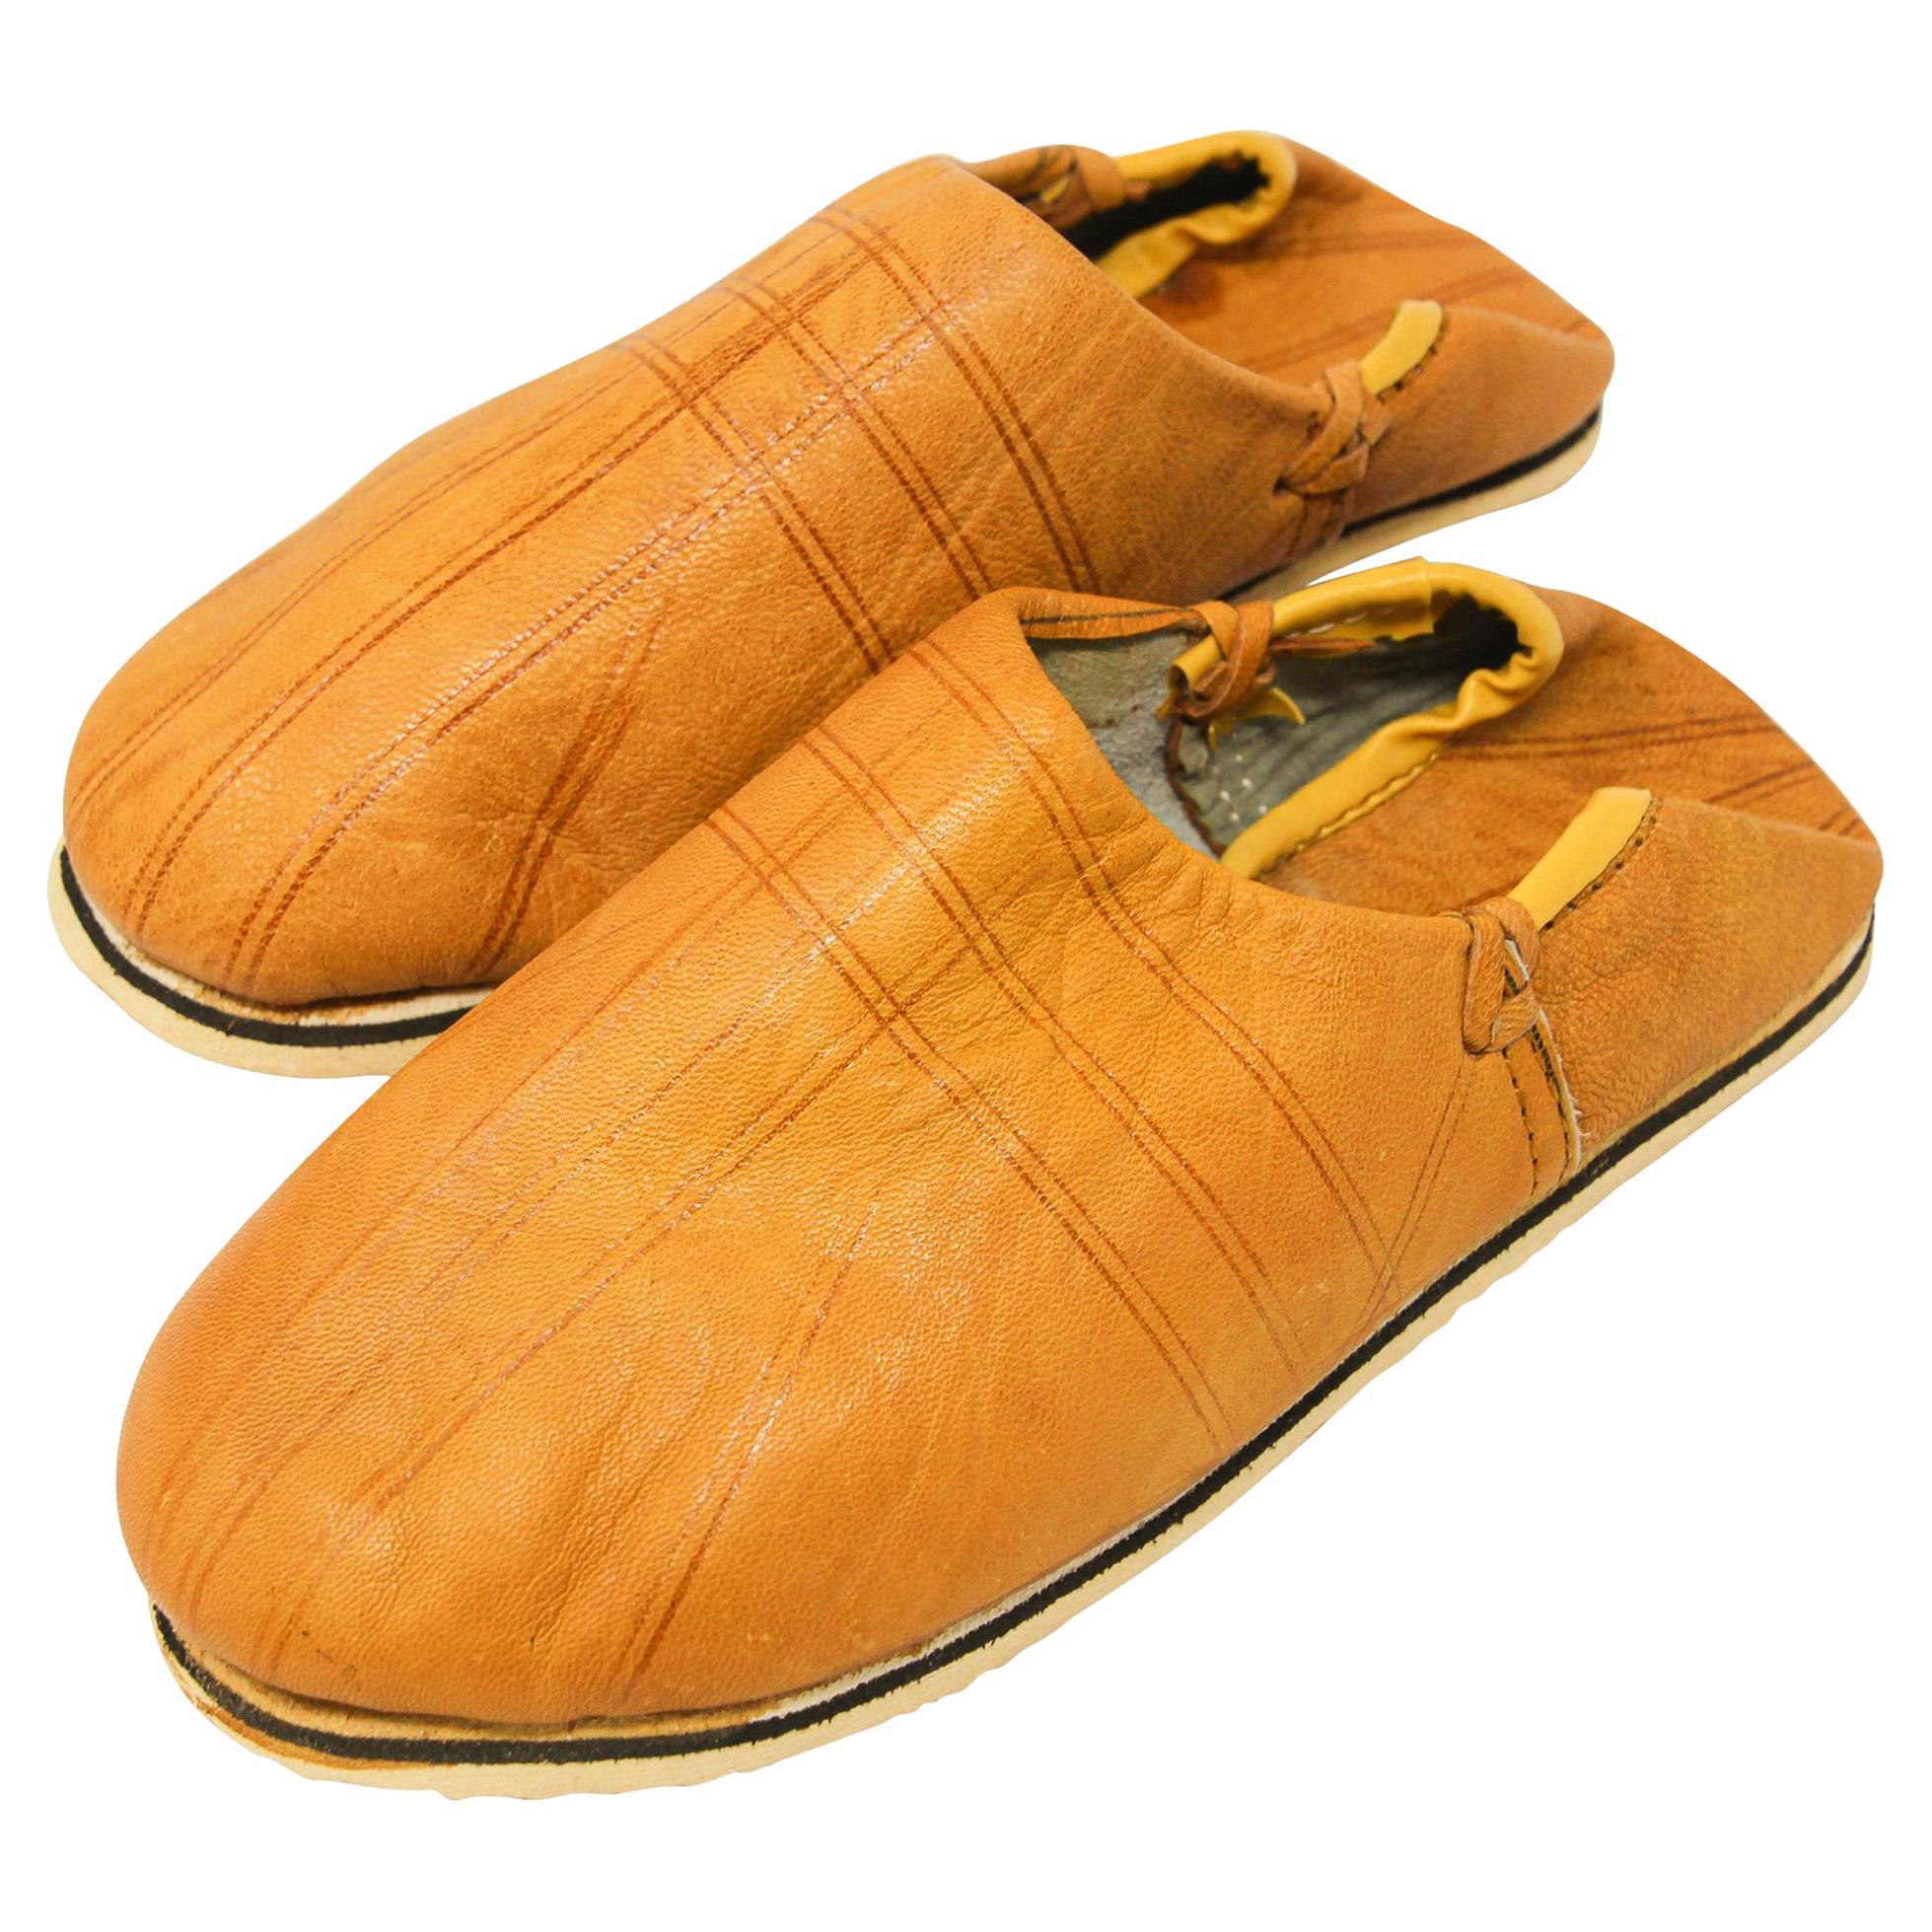 Chaussures marocaines en cuir jaune travaillées à la main - Chaussures ethniques en vente